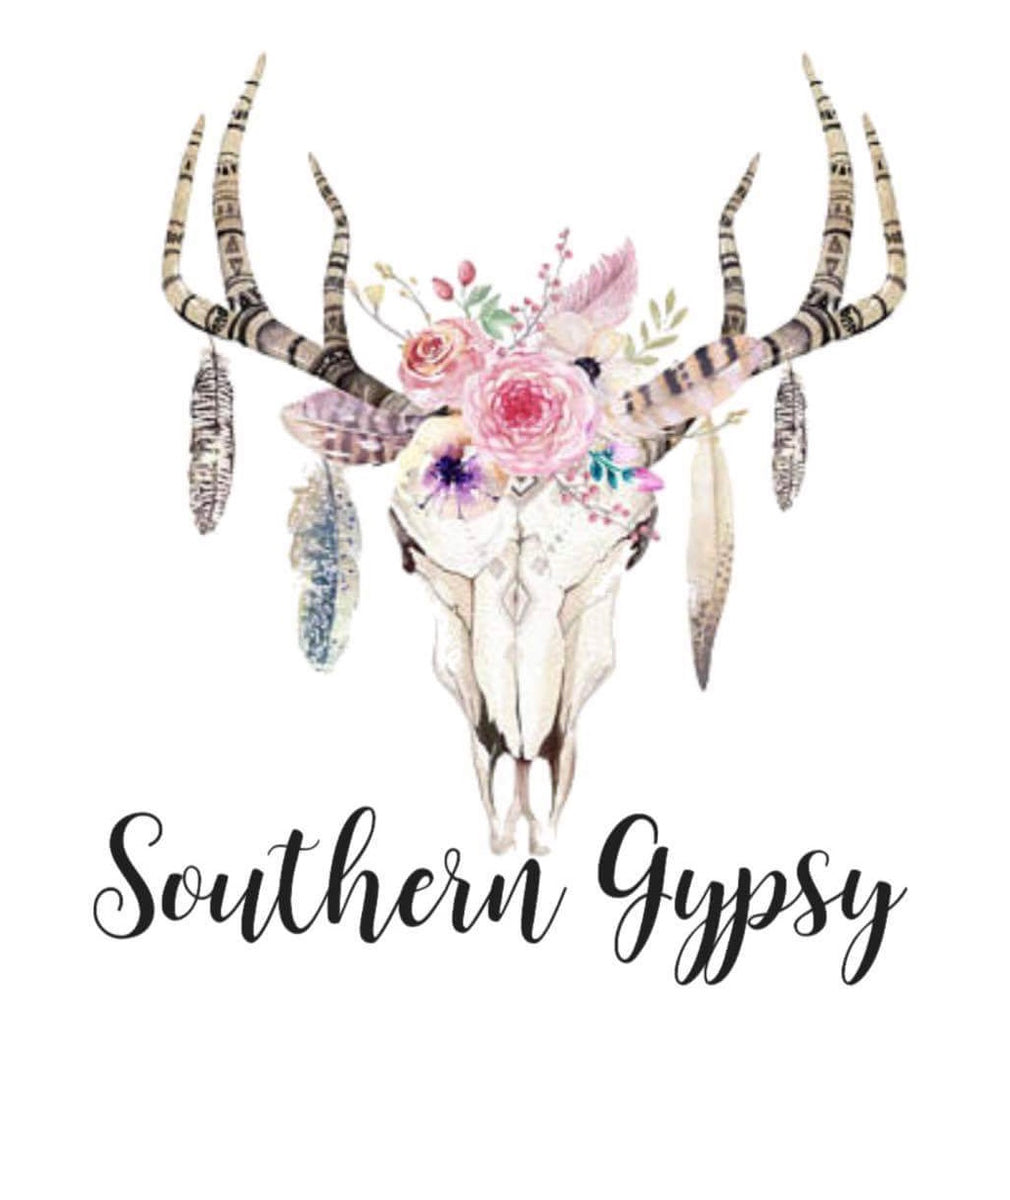 Southern Gypsy – Southern Gypsy LLC